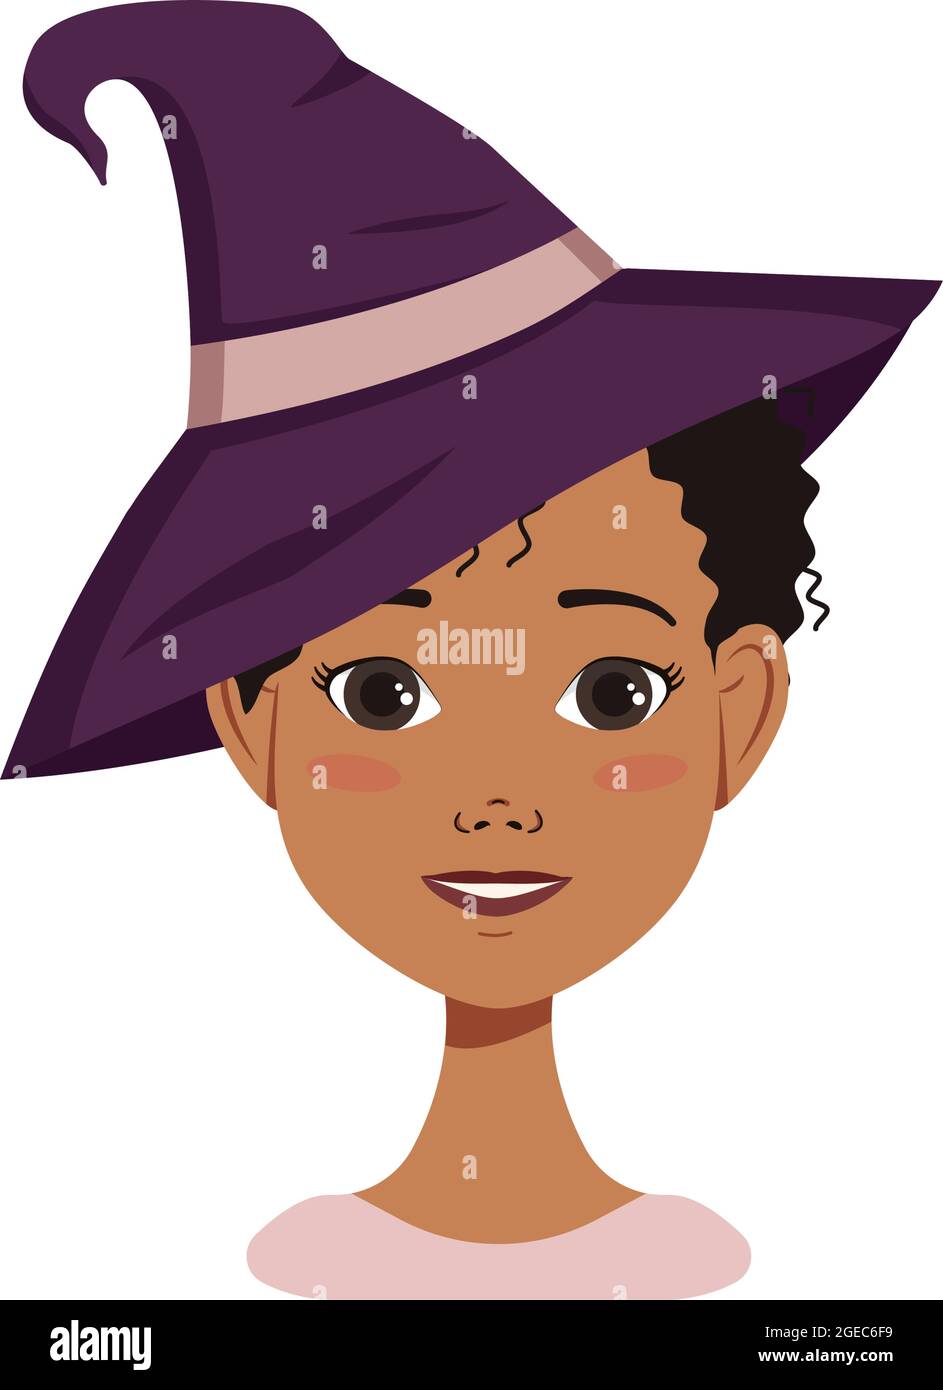 Avatar d'une femme afro-américaine aux cheveux bouclés noirs avec des émotions de joie et de bonheur, sourire et chapeau de sorcière. Personnage d'Halloween en costume Illustration de Vecteur